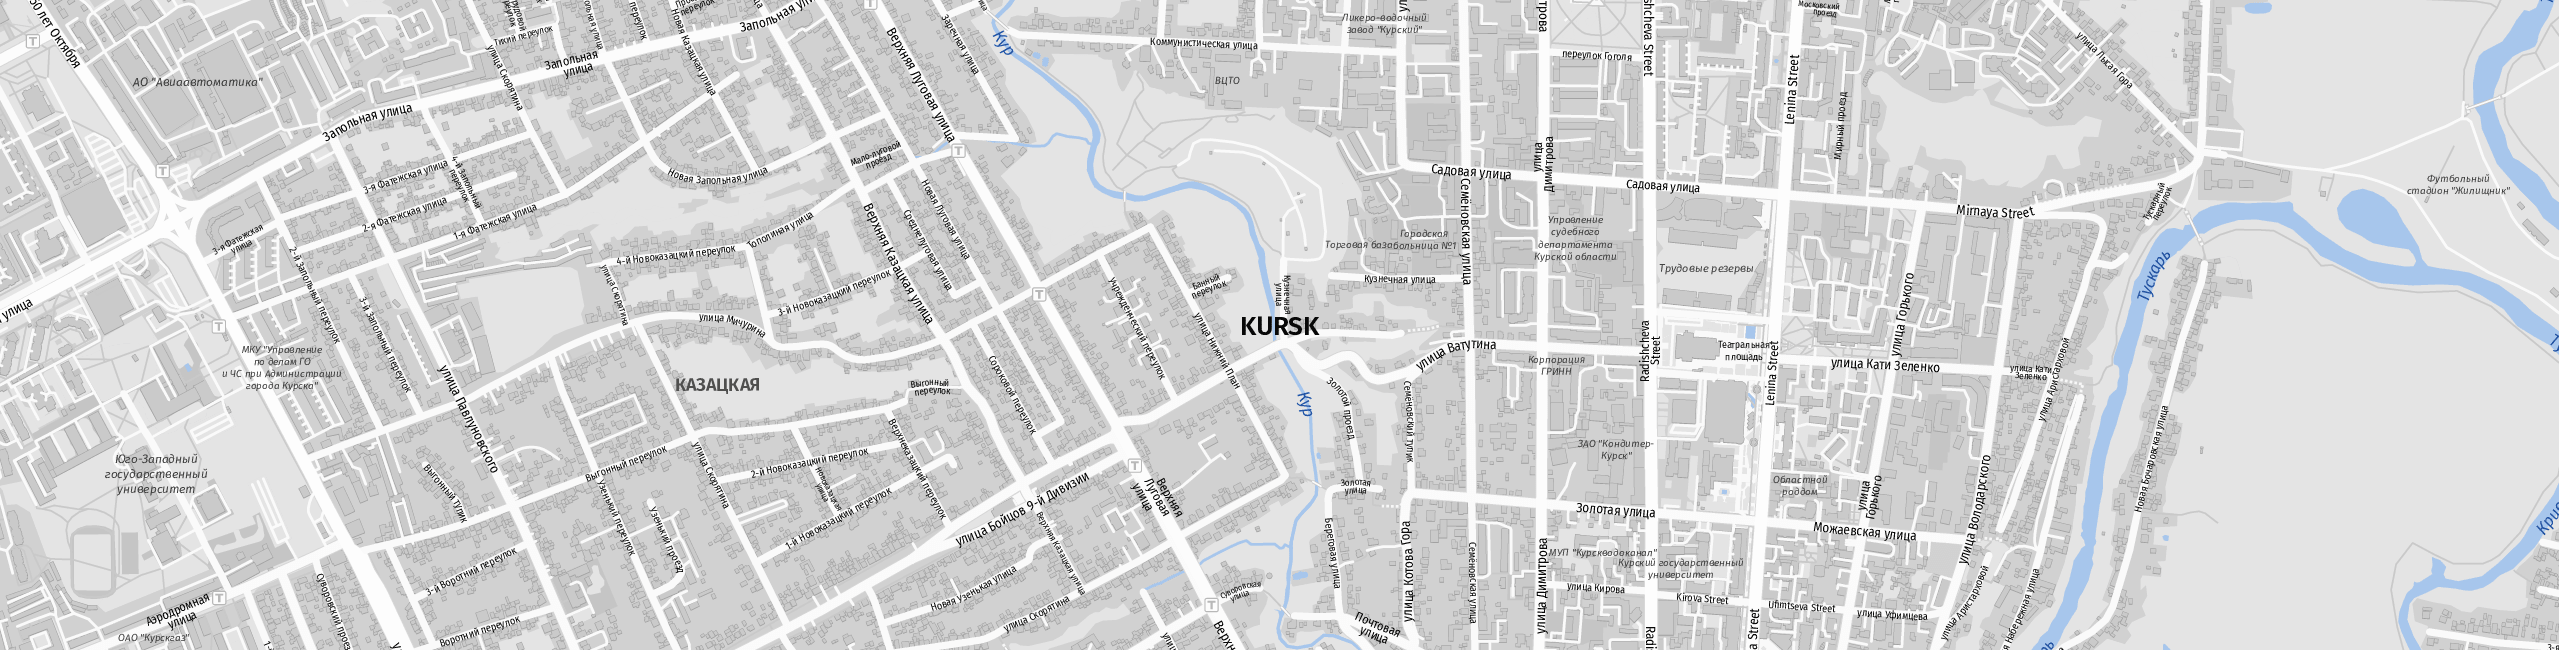 Stadtplan Kursk zum Downloaden.